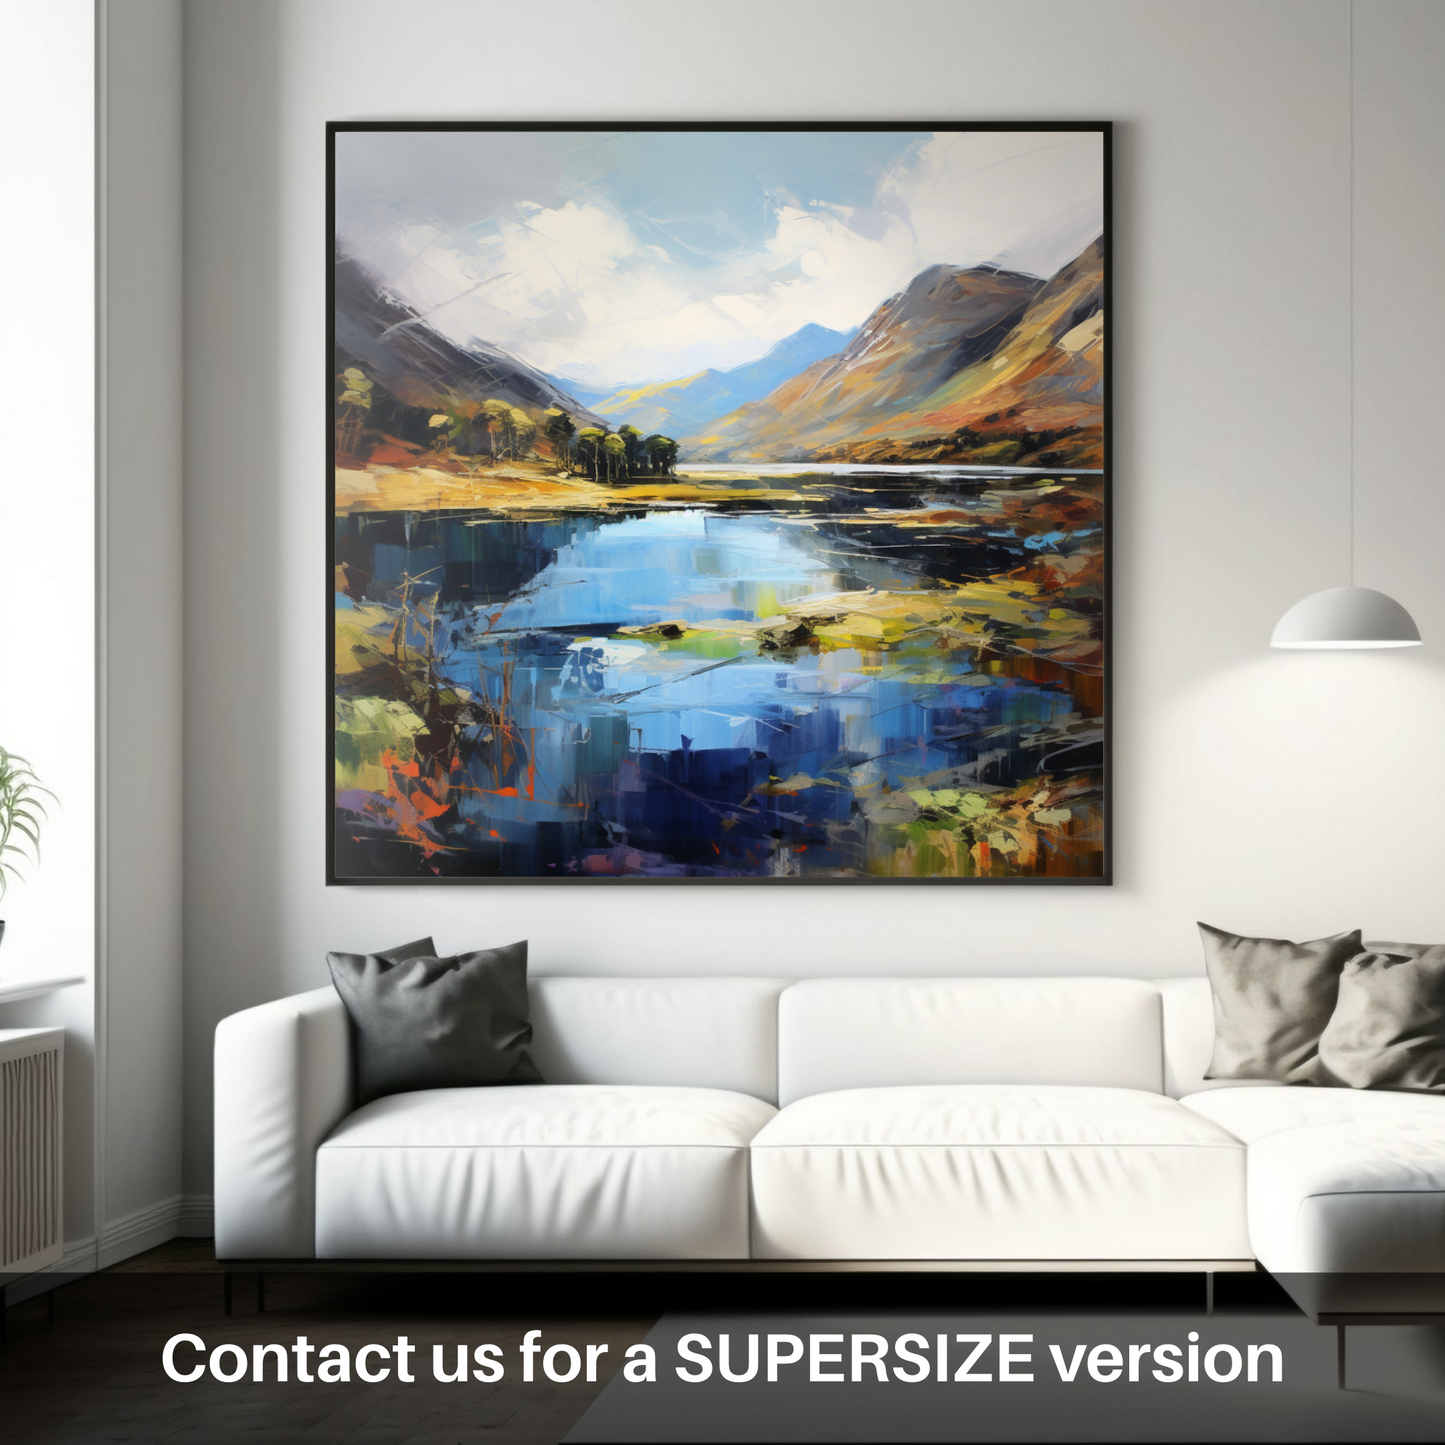 Huge supersize print of Loch Shiel, Highlands